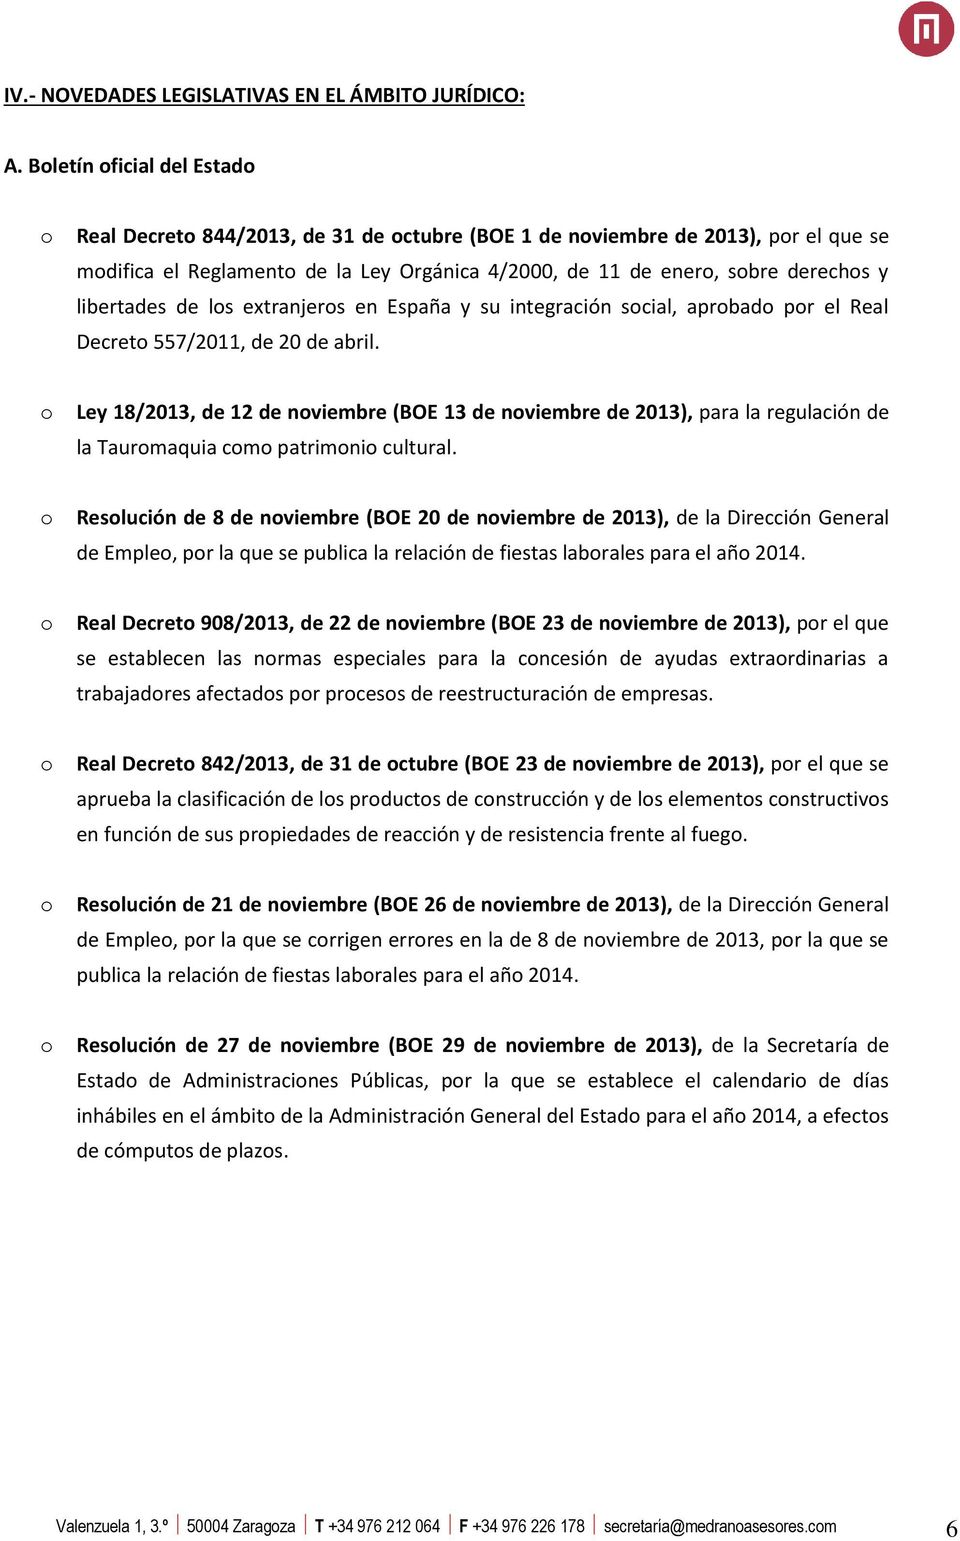 extranjers en España y su integración scial, aprbad pr el Real Decret 557/2011, de 20 de abril.